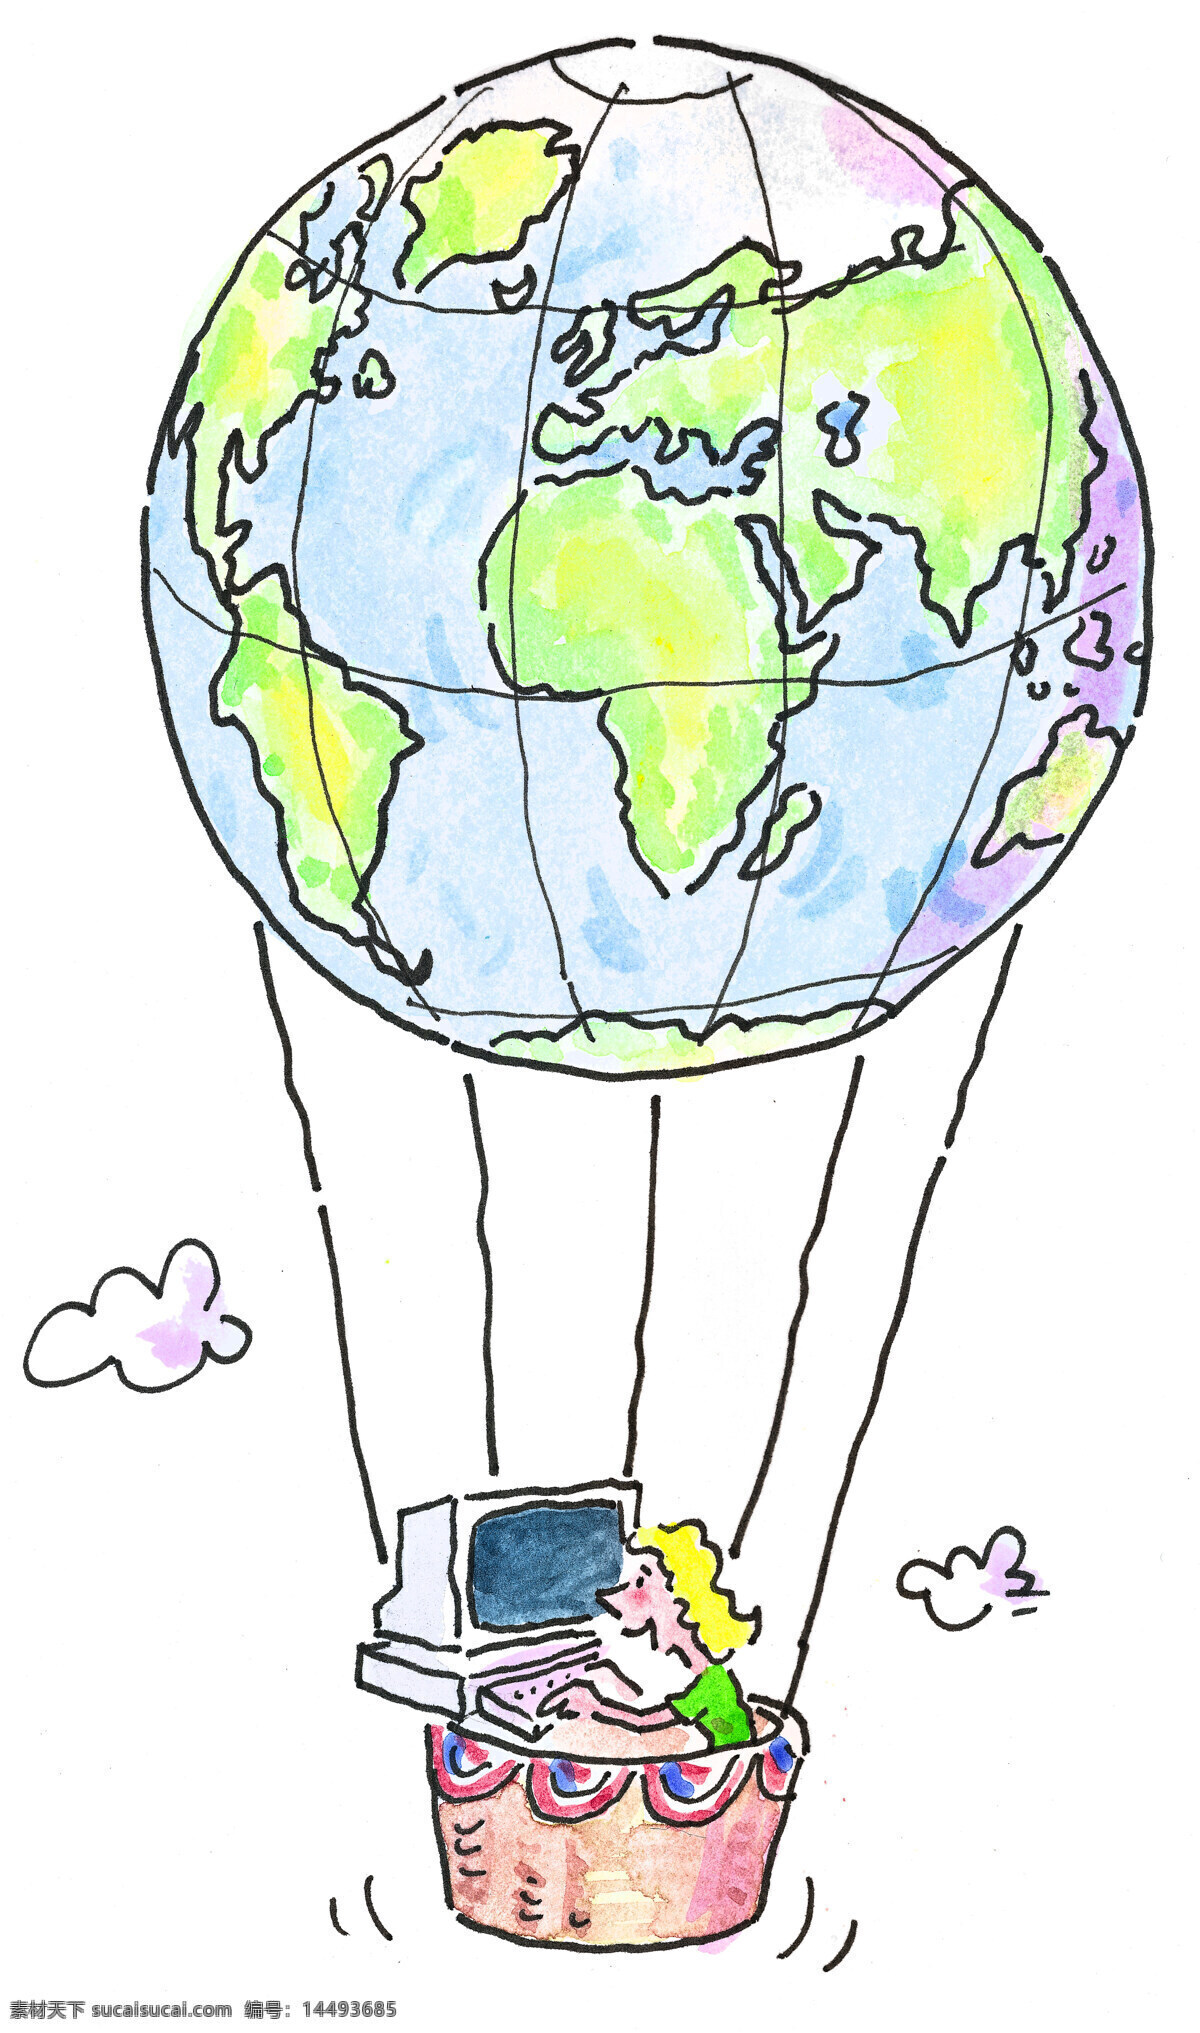 热气球 上 商业 男性 商业插画 漫画 金融漫画 插画素材 职业人物 白领 商务男性 男人 金融贸易 地球 卡通人物 人物图片